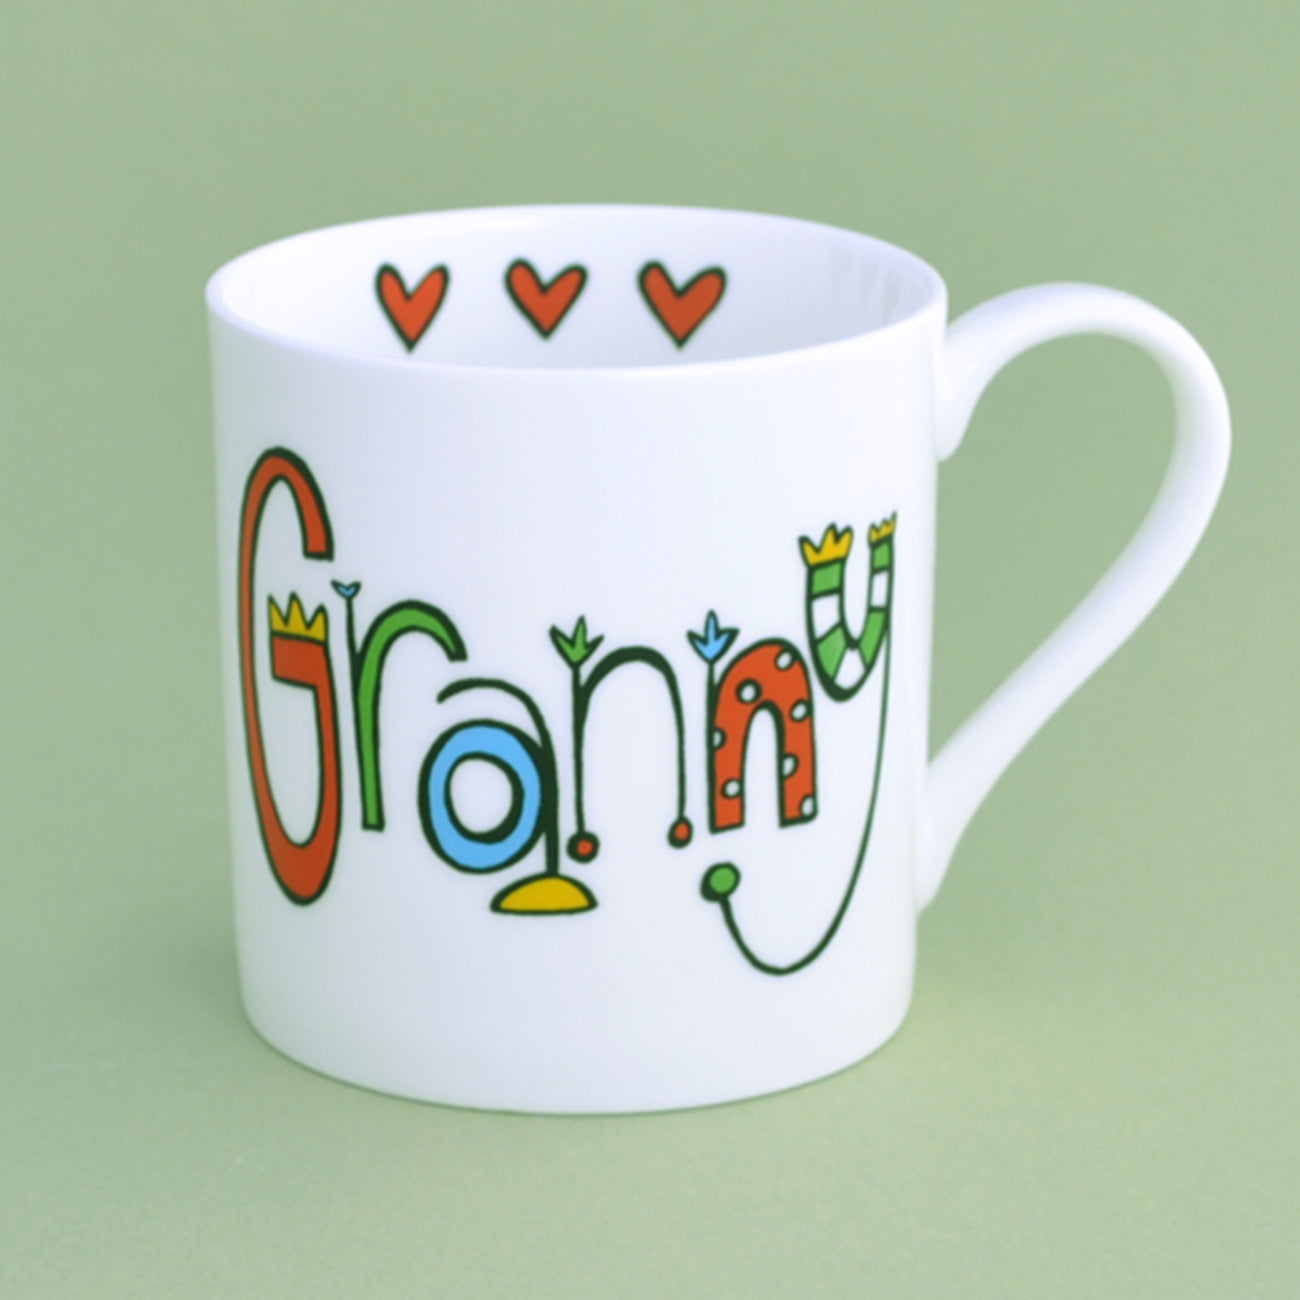 china granny mug